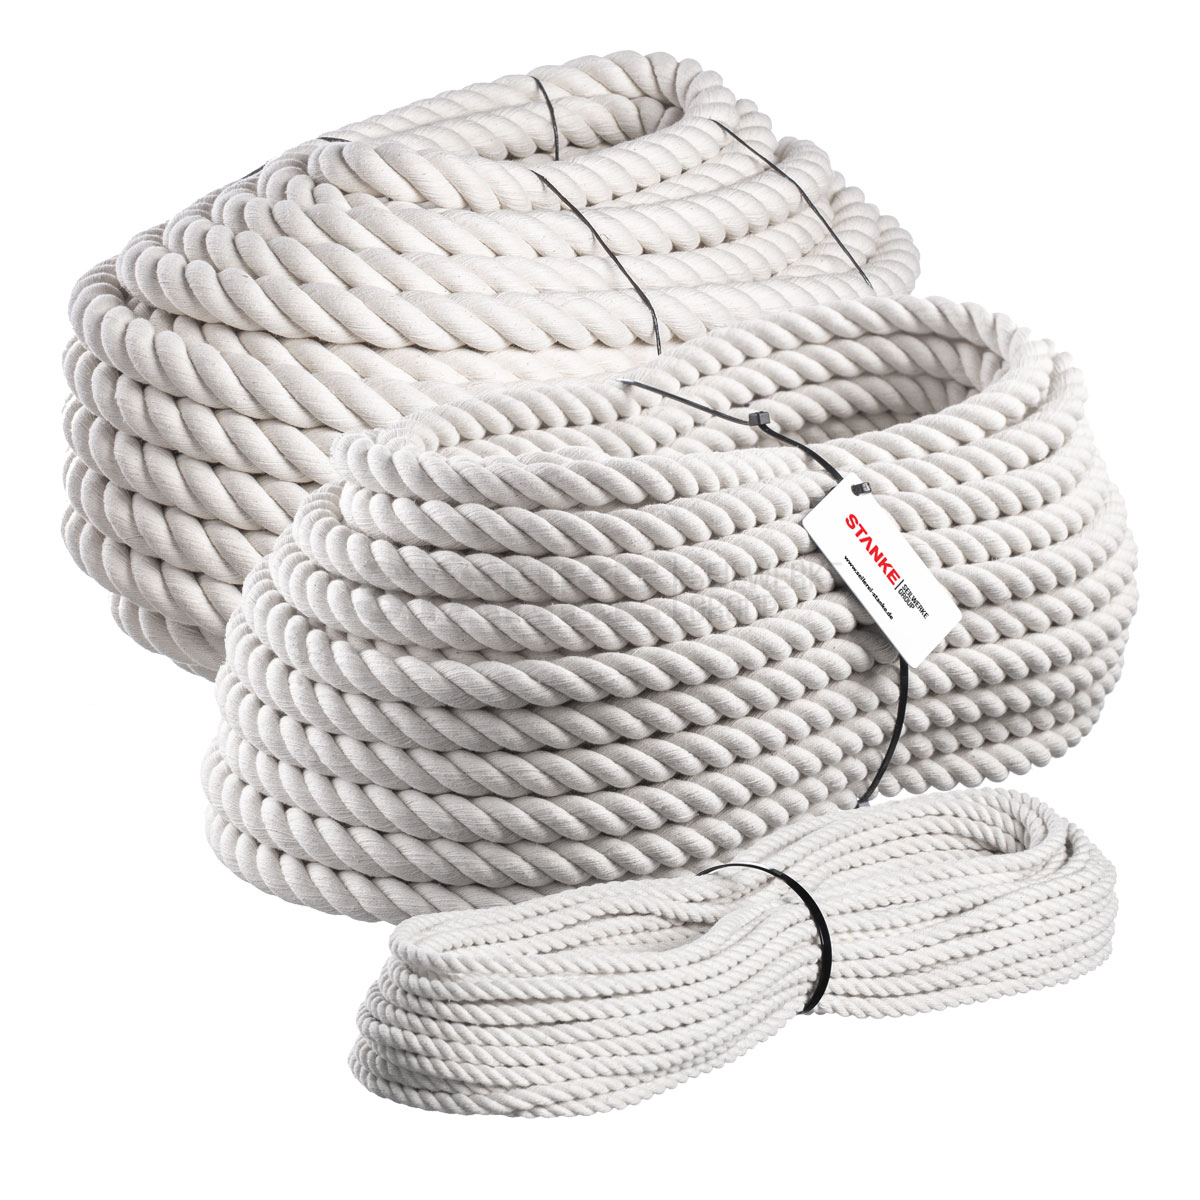 Seilwerk STANKE Corde de Jute fibres naturelles enroulées gréement la rambarde de sécurité 36mm 20m